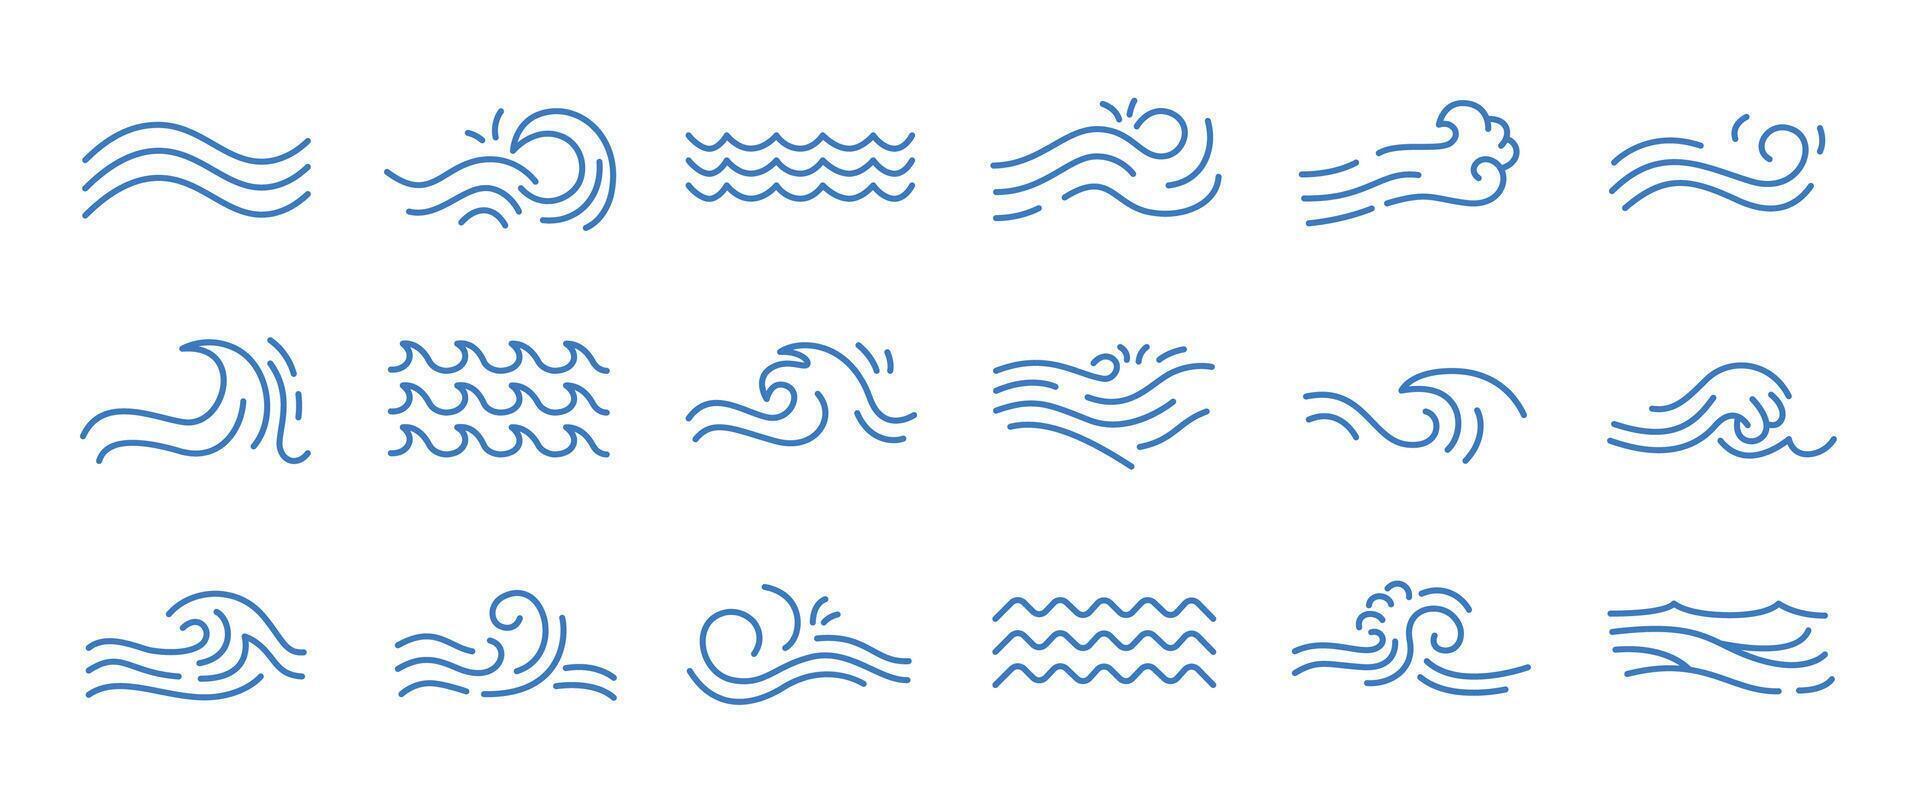 vatten Vinka linje ikoner. strömmande flod vatten och hav Vinka märken, översikt flytande element och virvla runt märken för logotyp design. vektor isolerat uppsättning